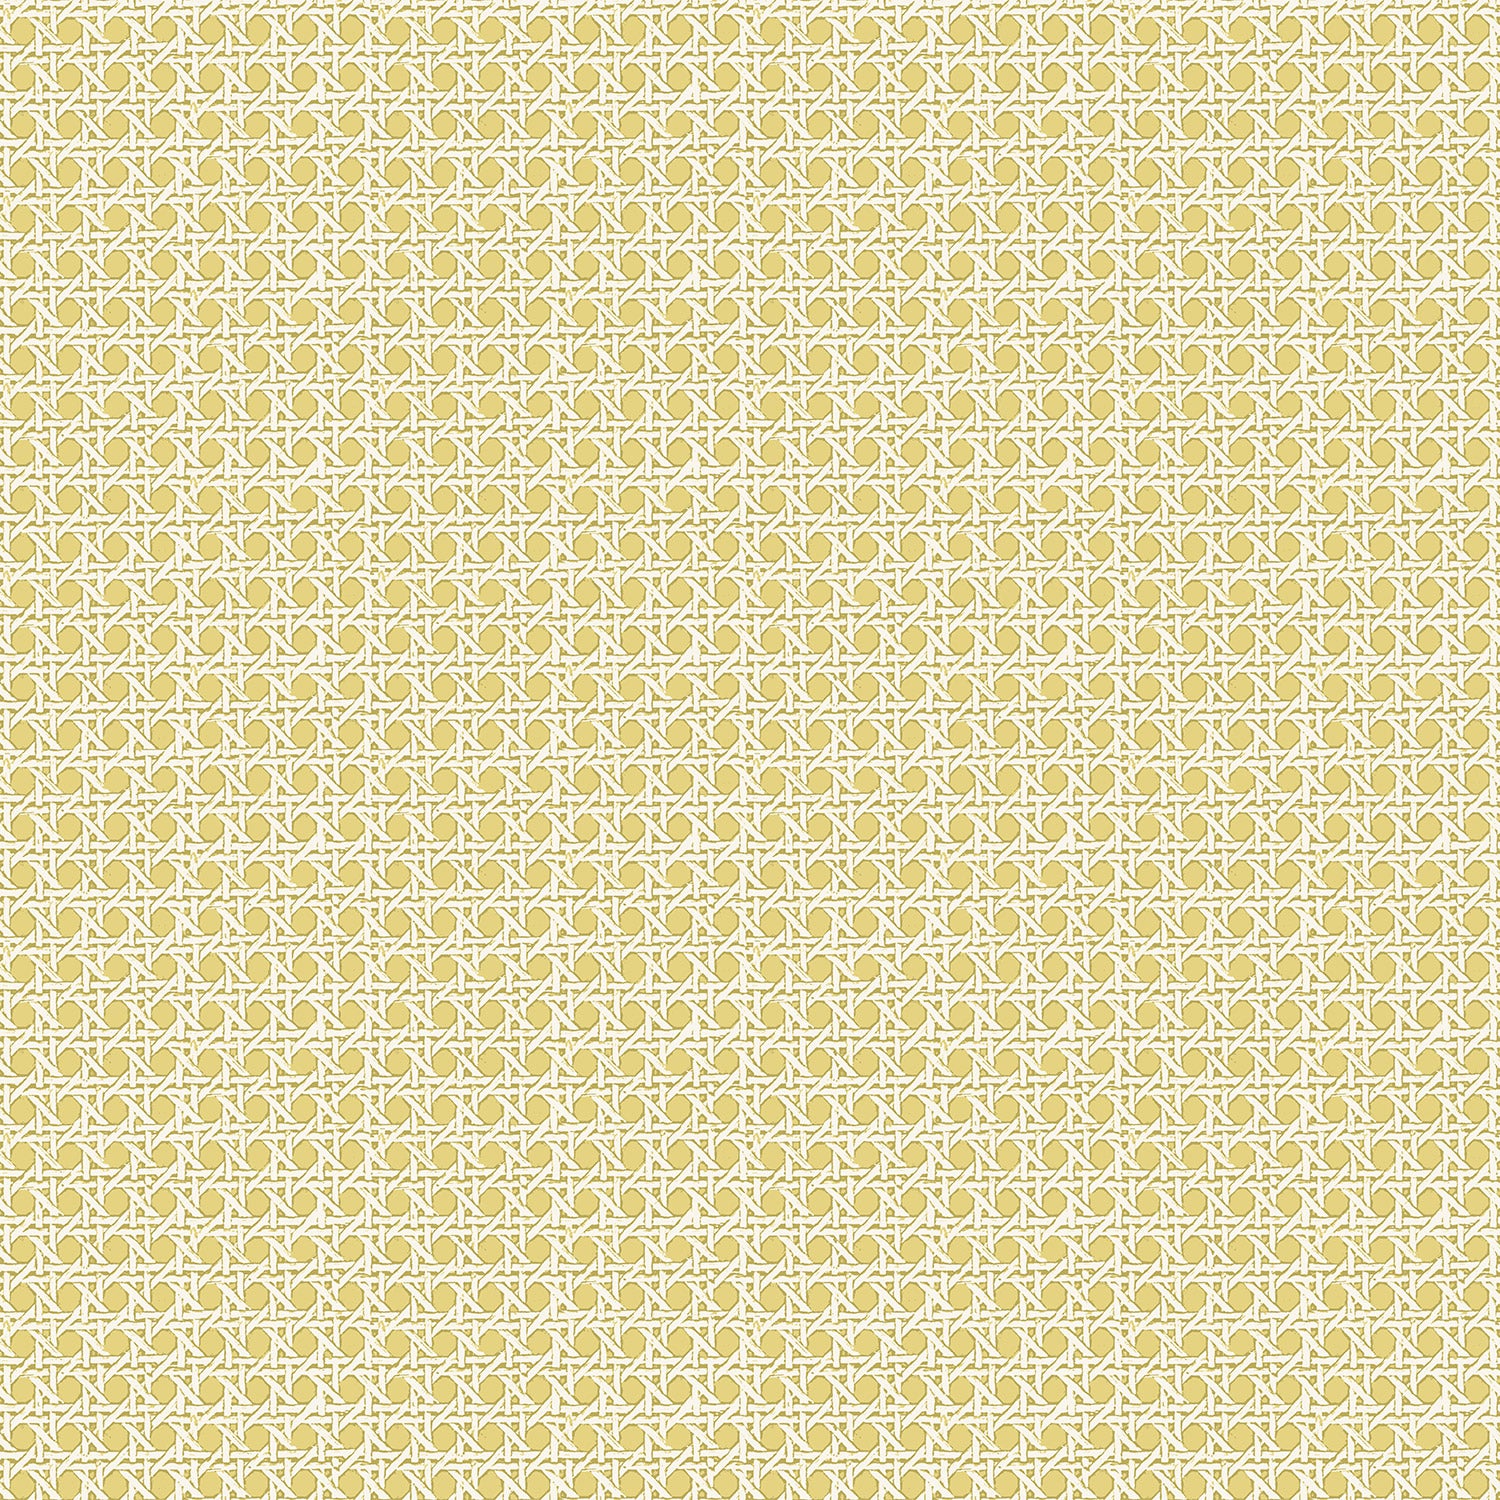 Wallpaper plain light yellow AS Creation 3532-14